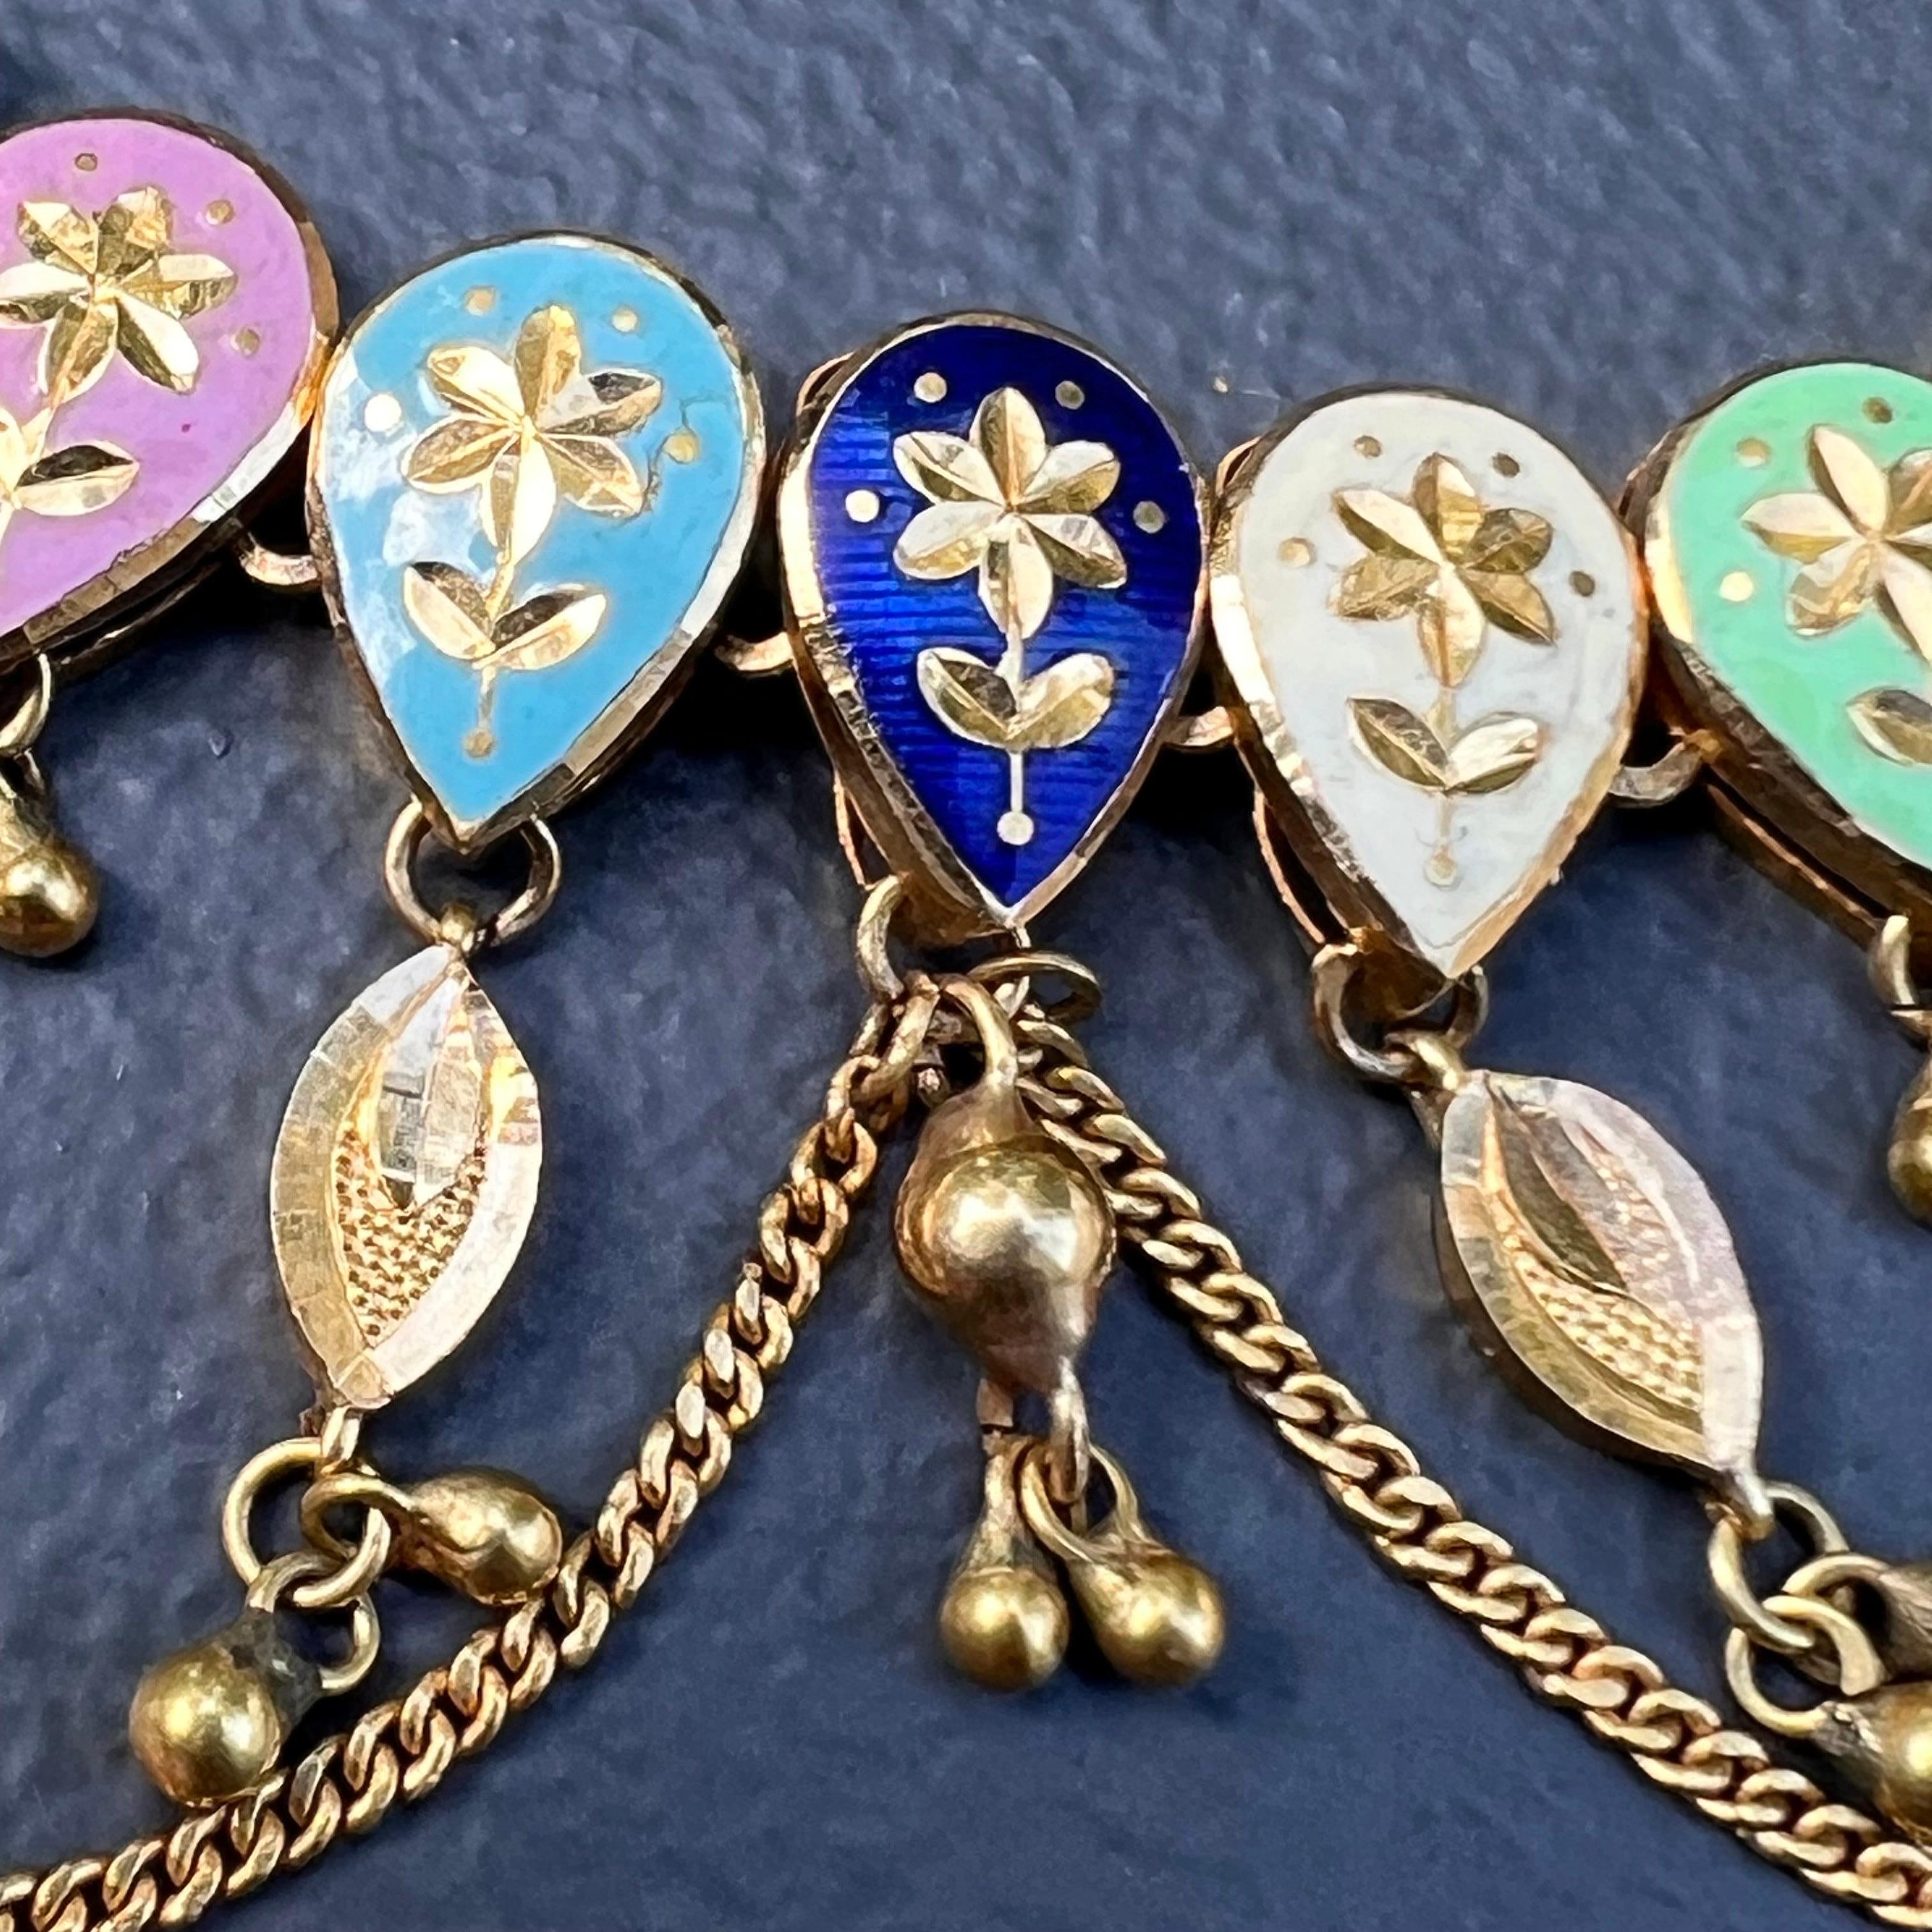 20kt gold ear chain for earrings handmade